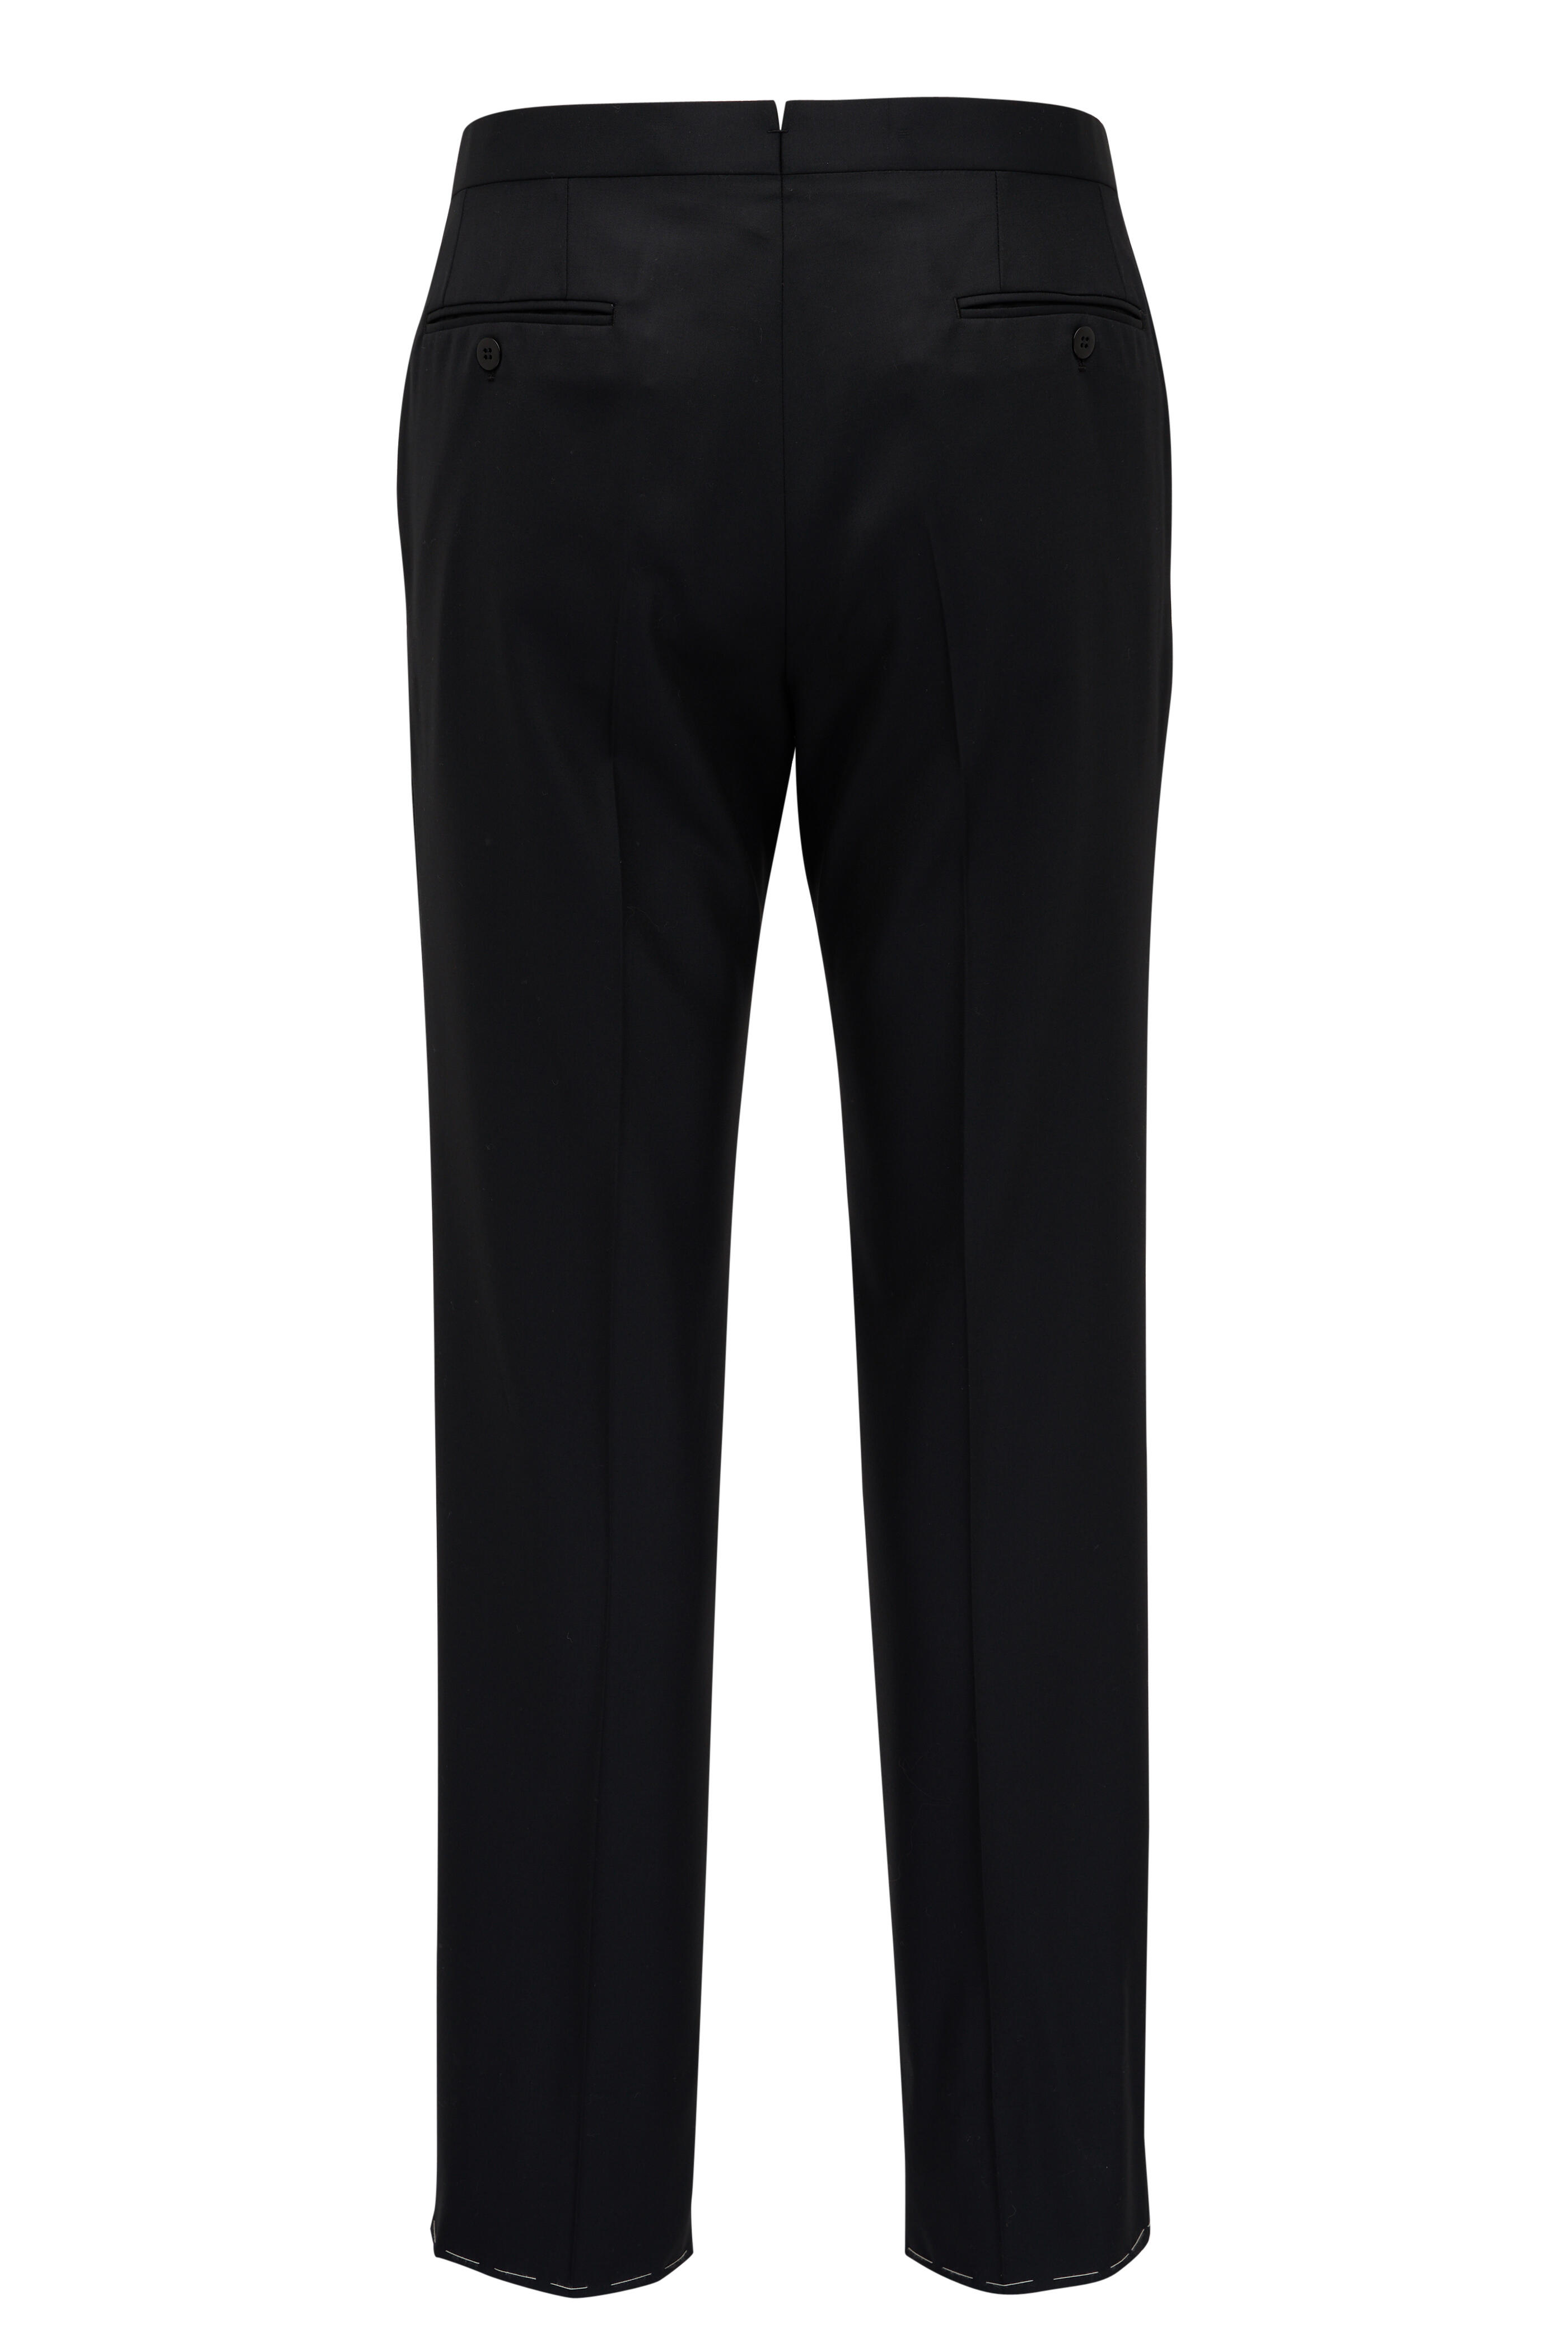 Brioni - Black Wool & Satin Stripe Tuxedo Pant | Mitchell Stores